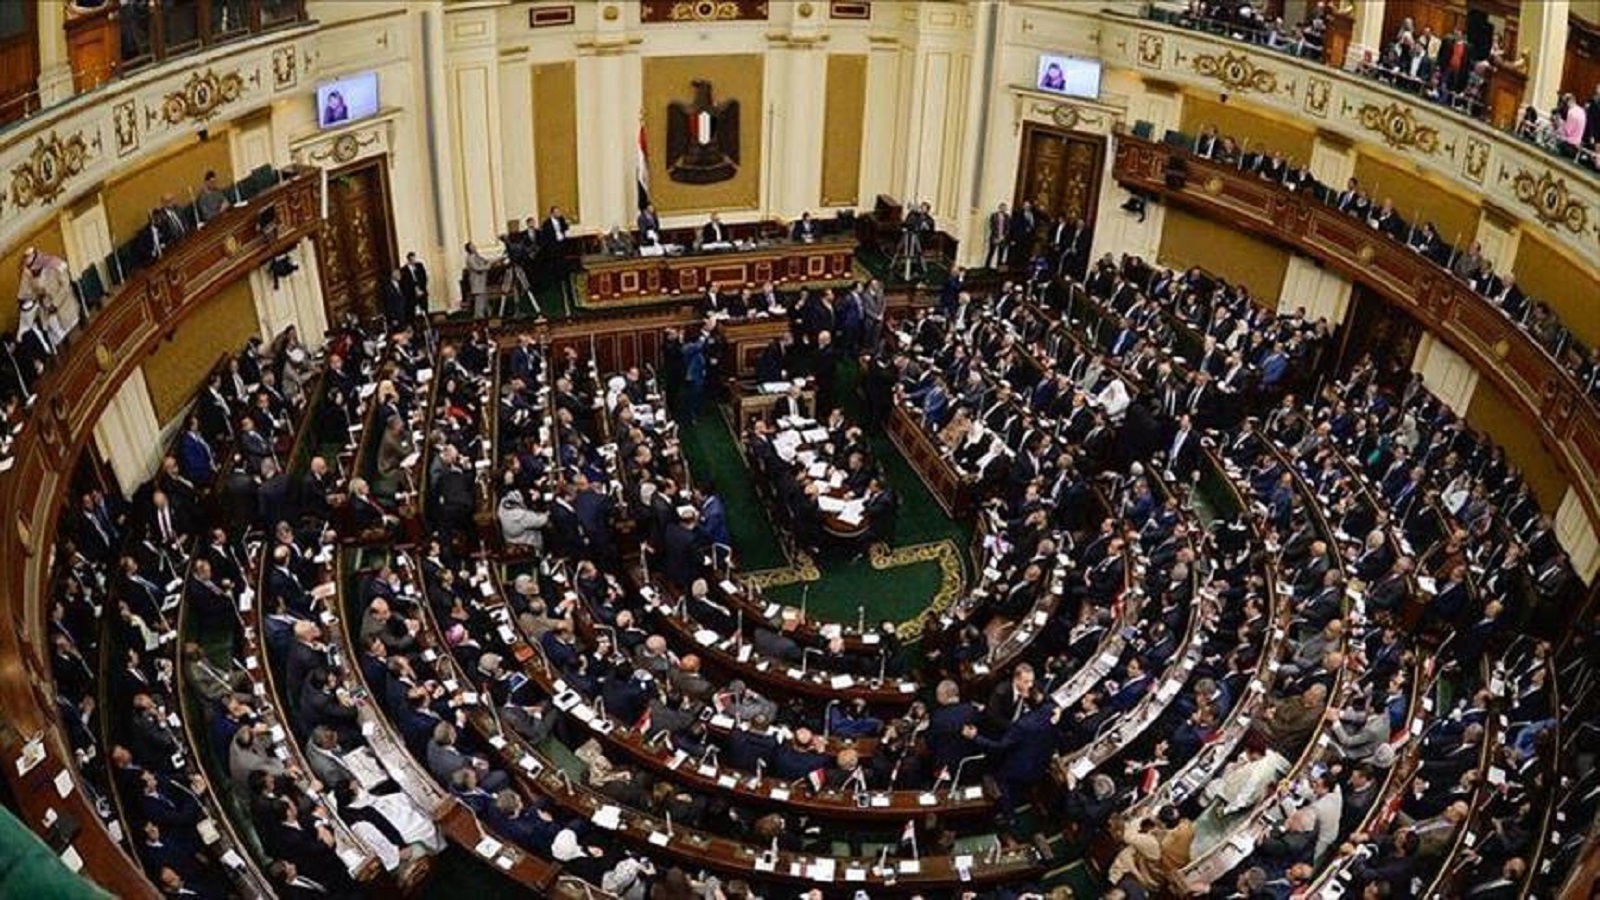 البرلمان المصري: فيلم كارتون طويل جداً